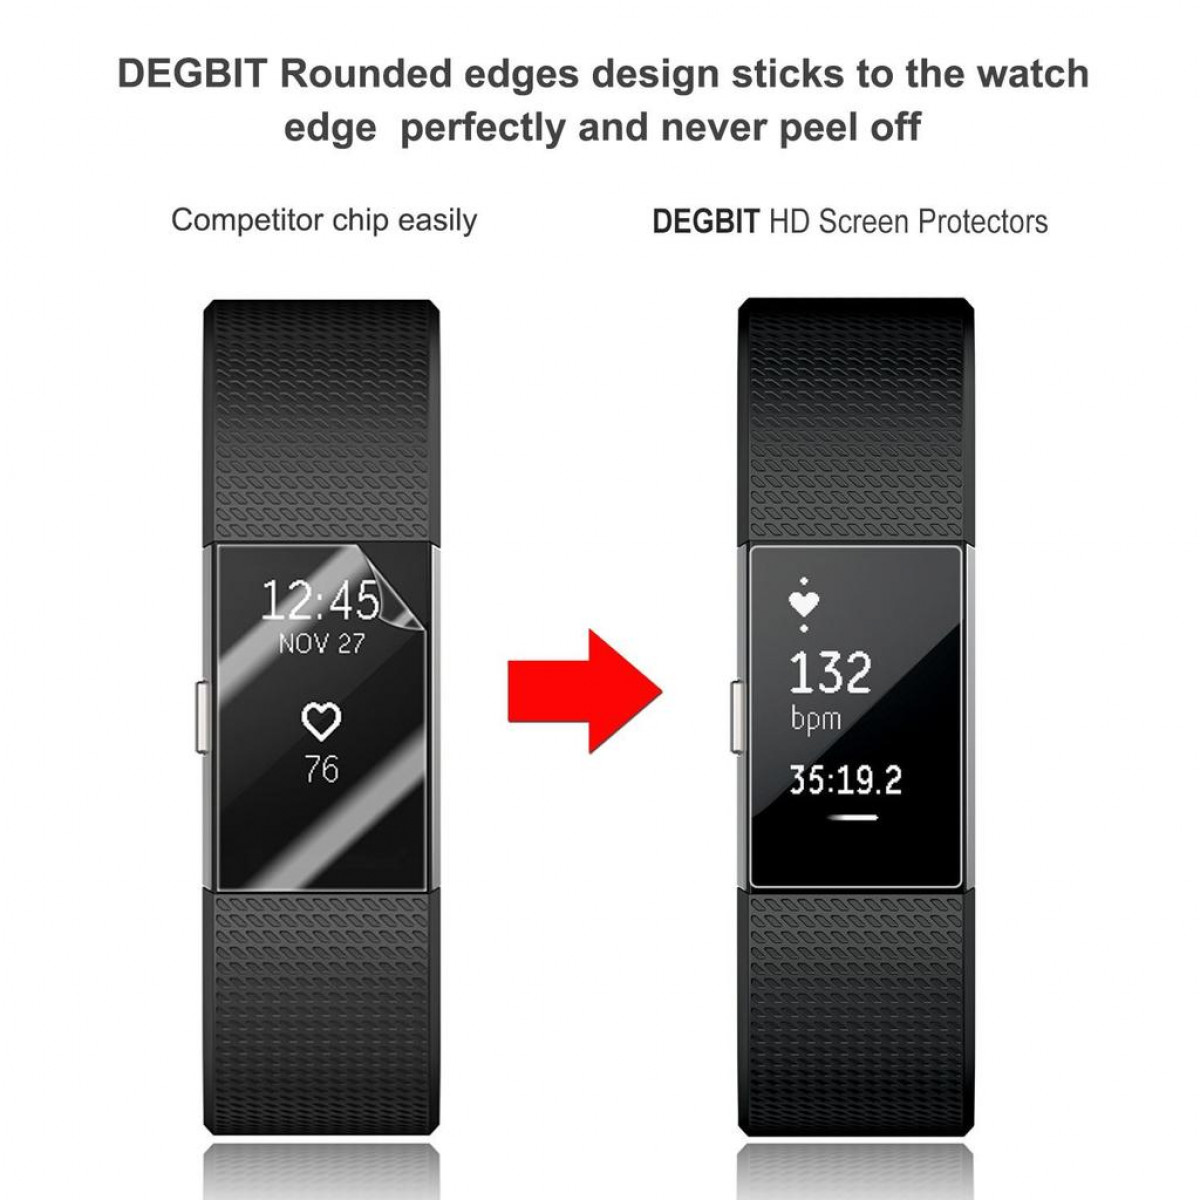 INF 45038230 Charge Fitbit Fitbit 2) Displayschutz(für